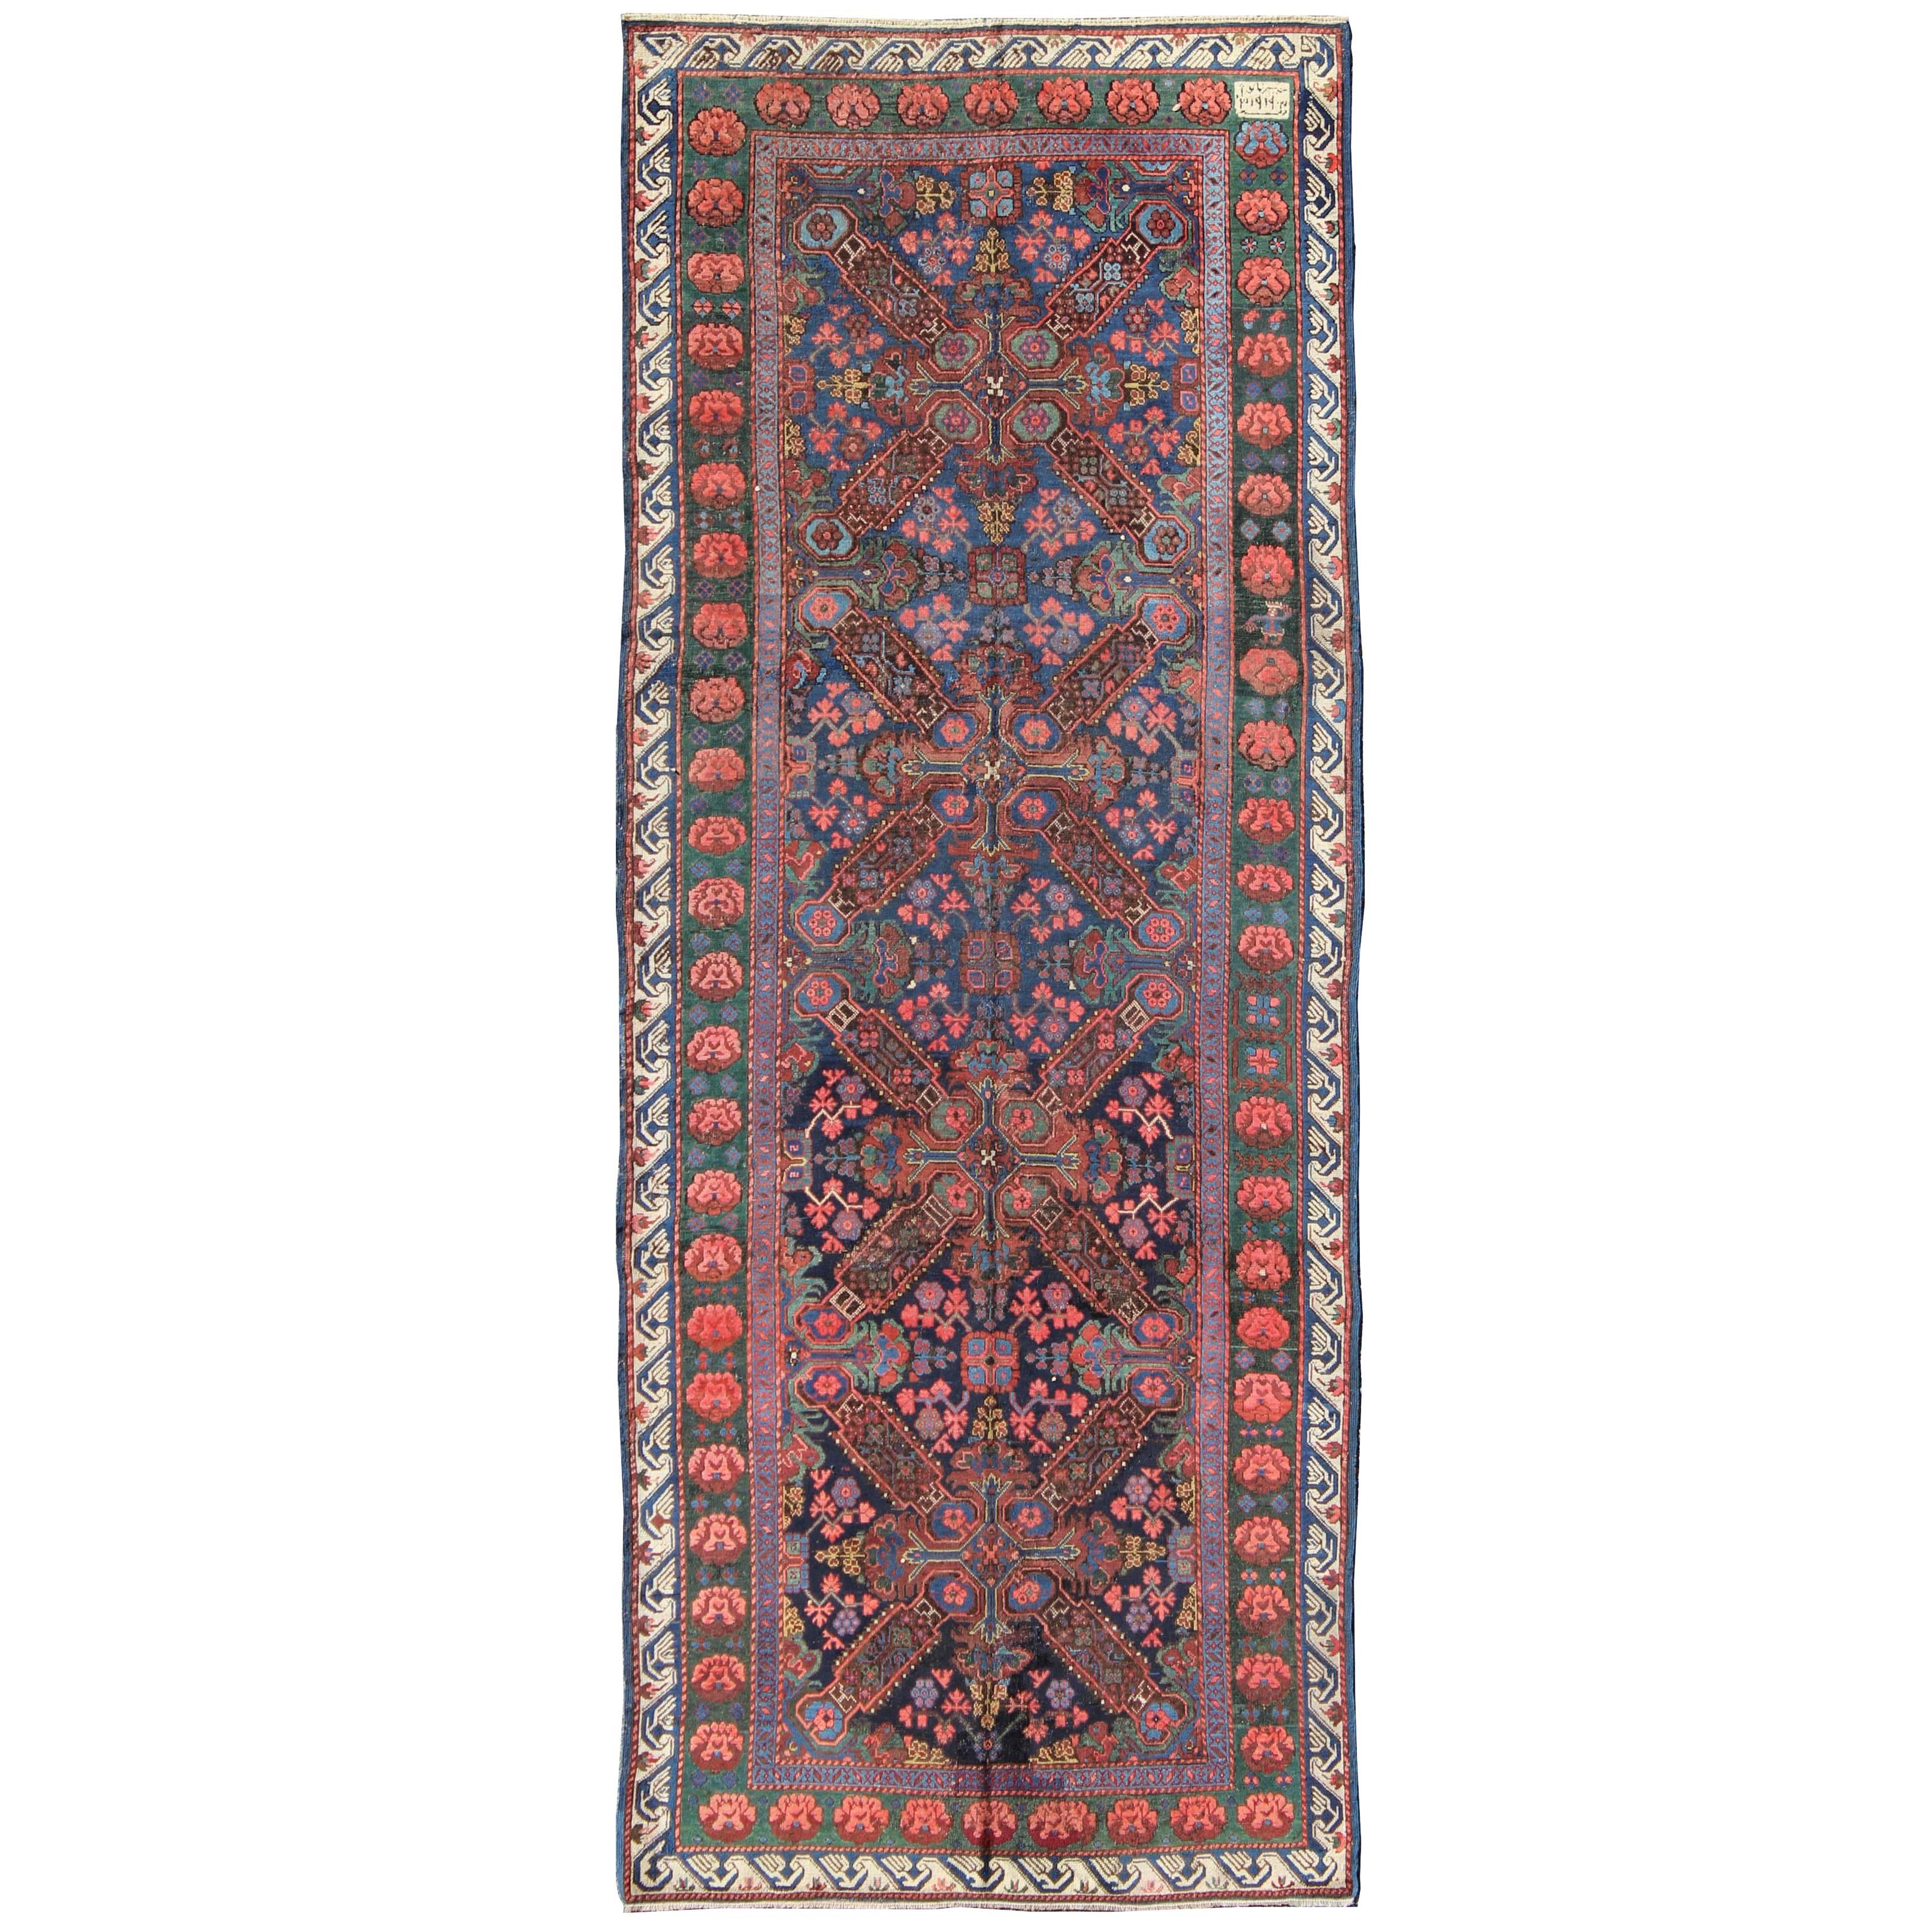 Antiker kaukasischer Seychour-Teppich aus dem 19. Jahrhundert in Blau, Grün, Braun und mehrfarbig